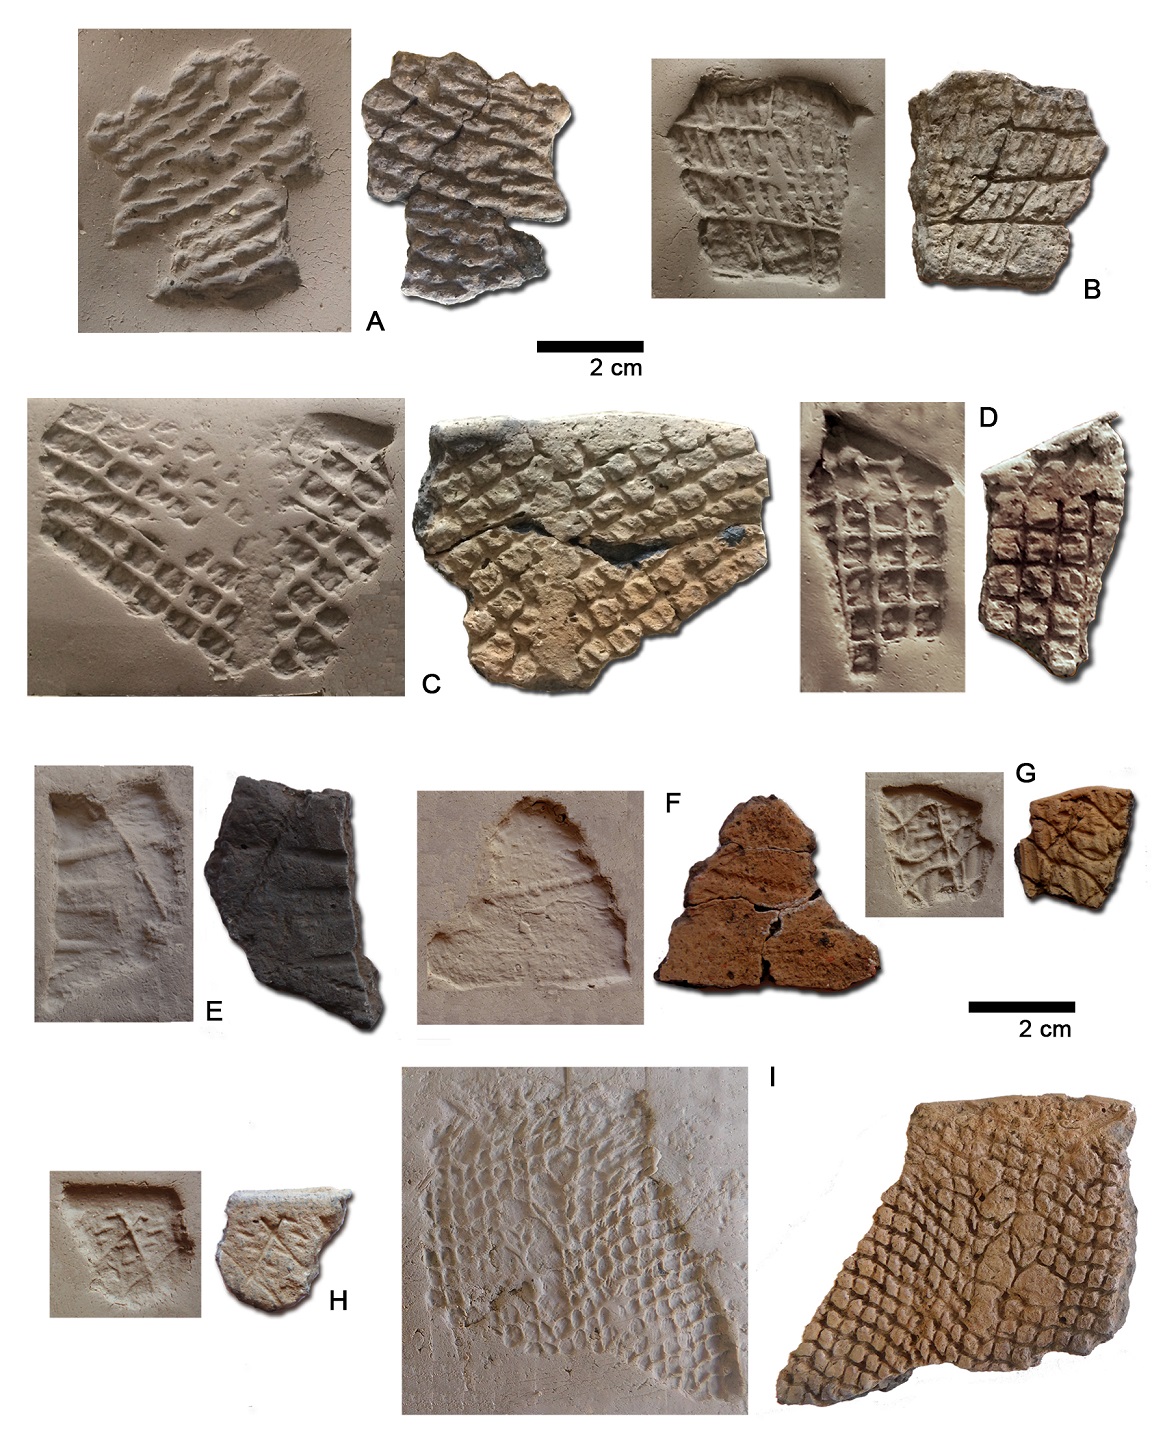 Improntas textiles en fragmentos cerámicos procedentes de los sitios arqueológicos Arroyo Cululú 1 (A, B, C, D); Familia Primón (E, F, G); Campo Cervi (H) y Ombú de Basualdo (I). A la izquierda de cada fragmento, los moldes positivos realizados.